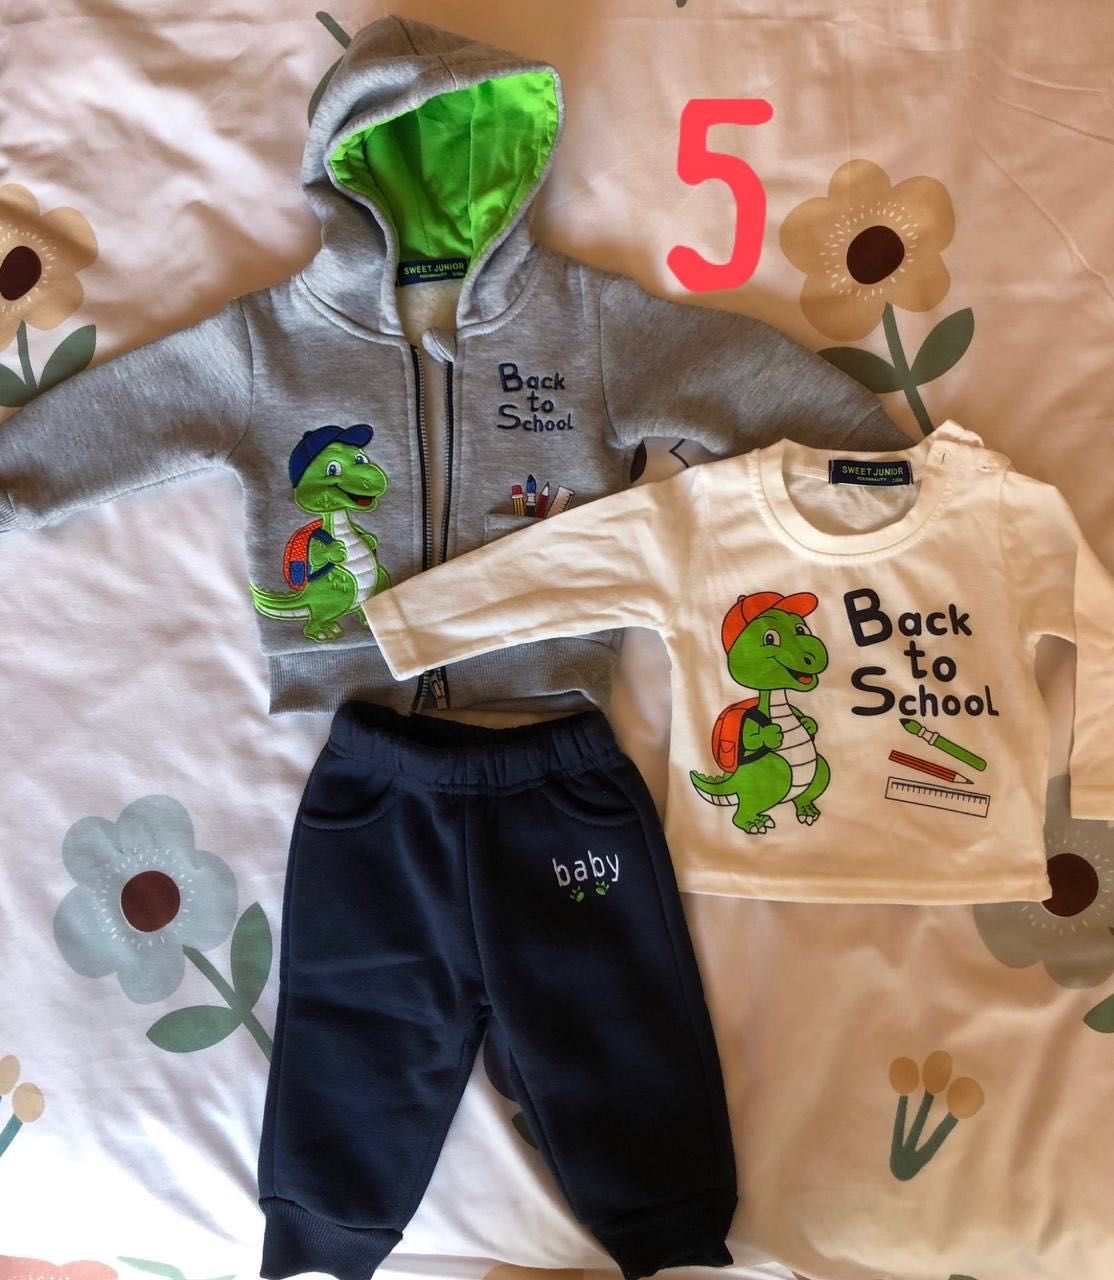 Бебешки дрехи за момче - различни размери 3/6 месеца